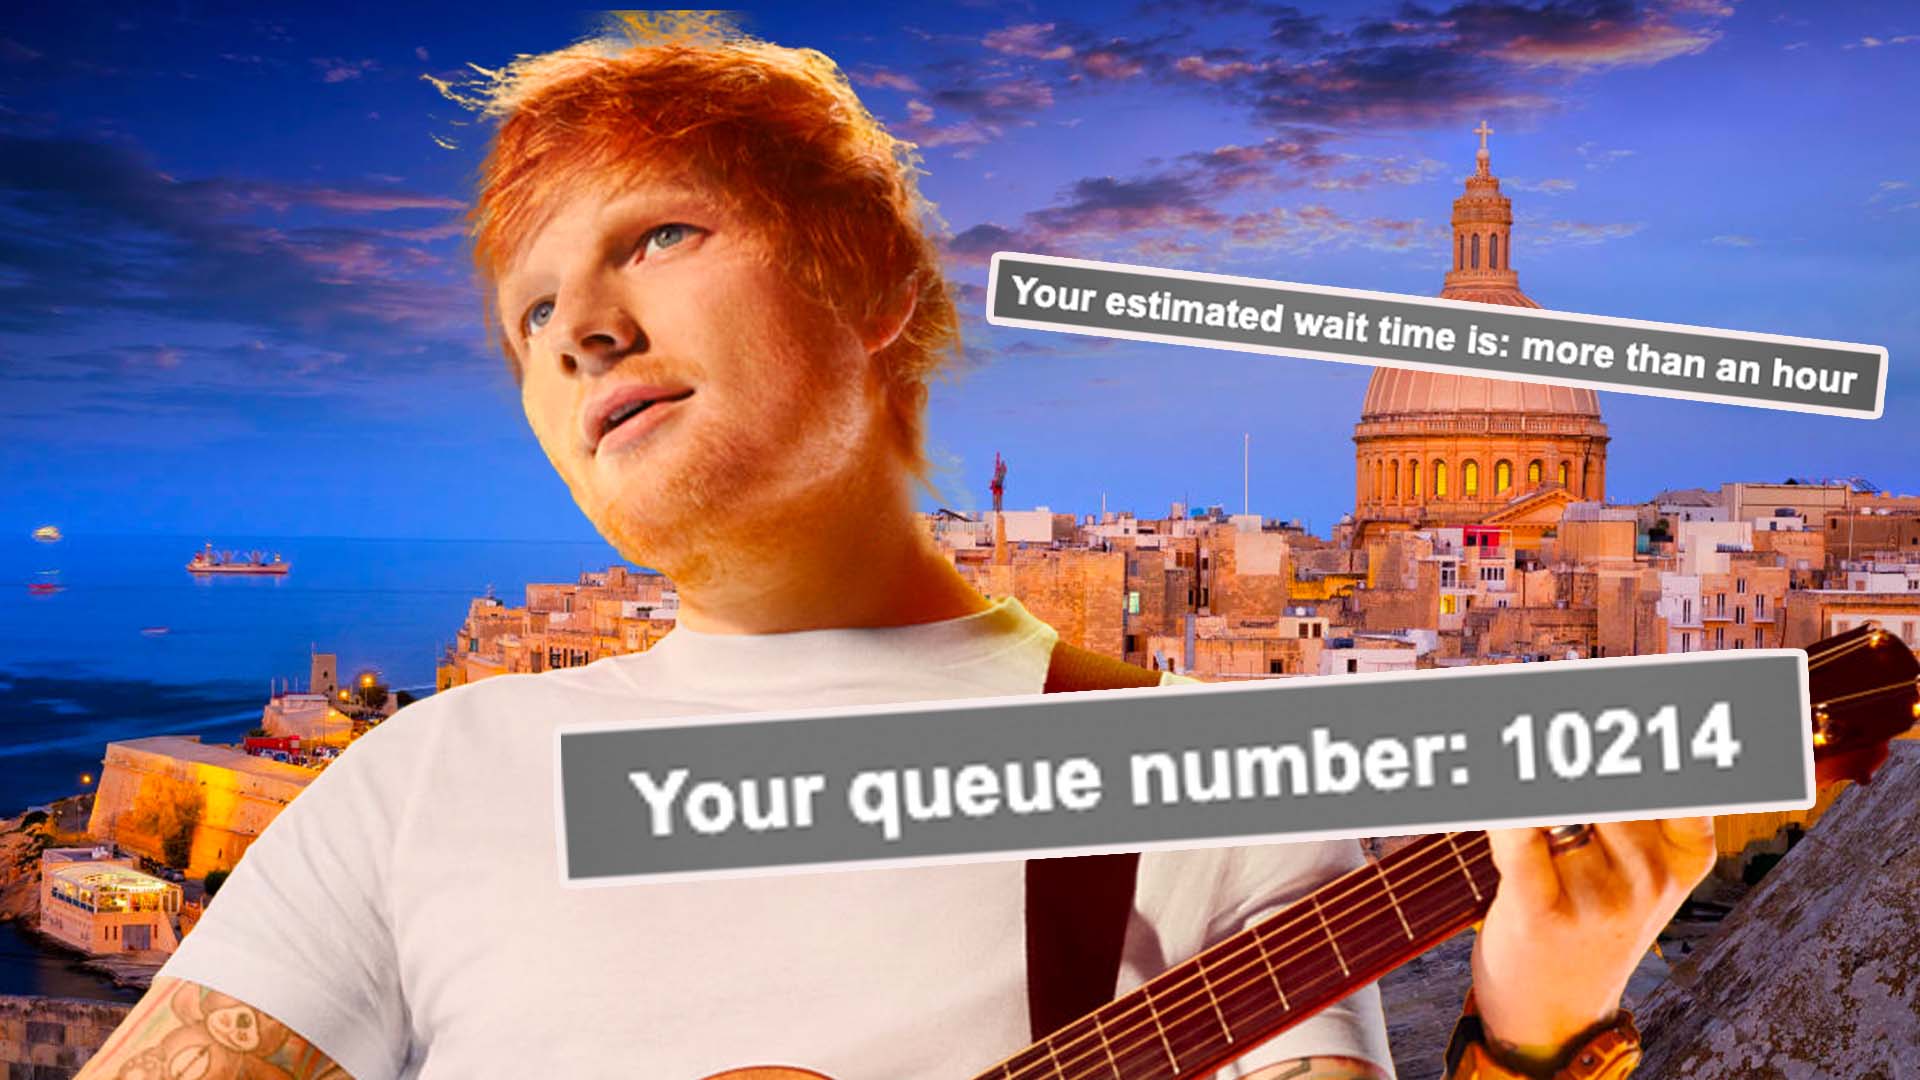 Over 10,000 In Queue To Buy Ed Sheeran Tickets